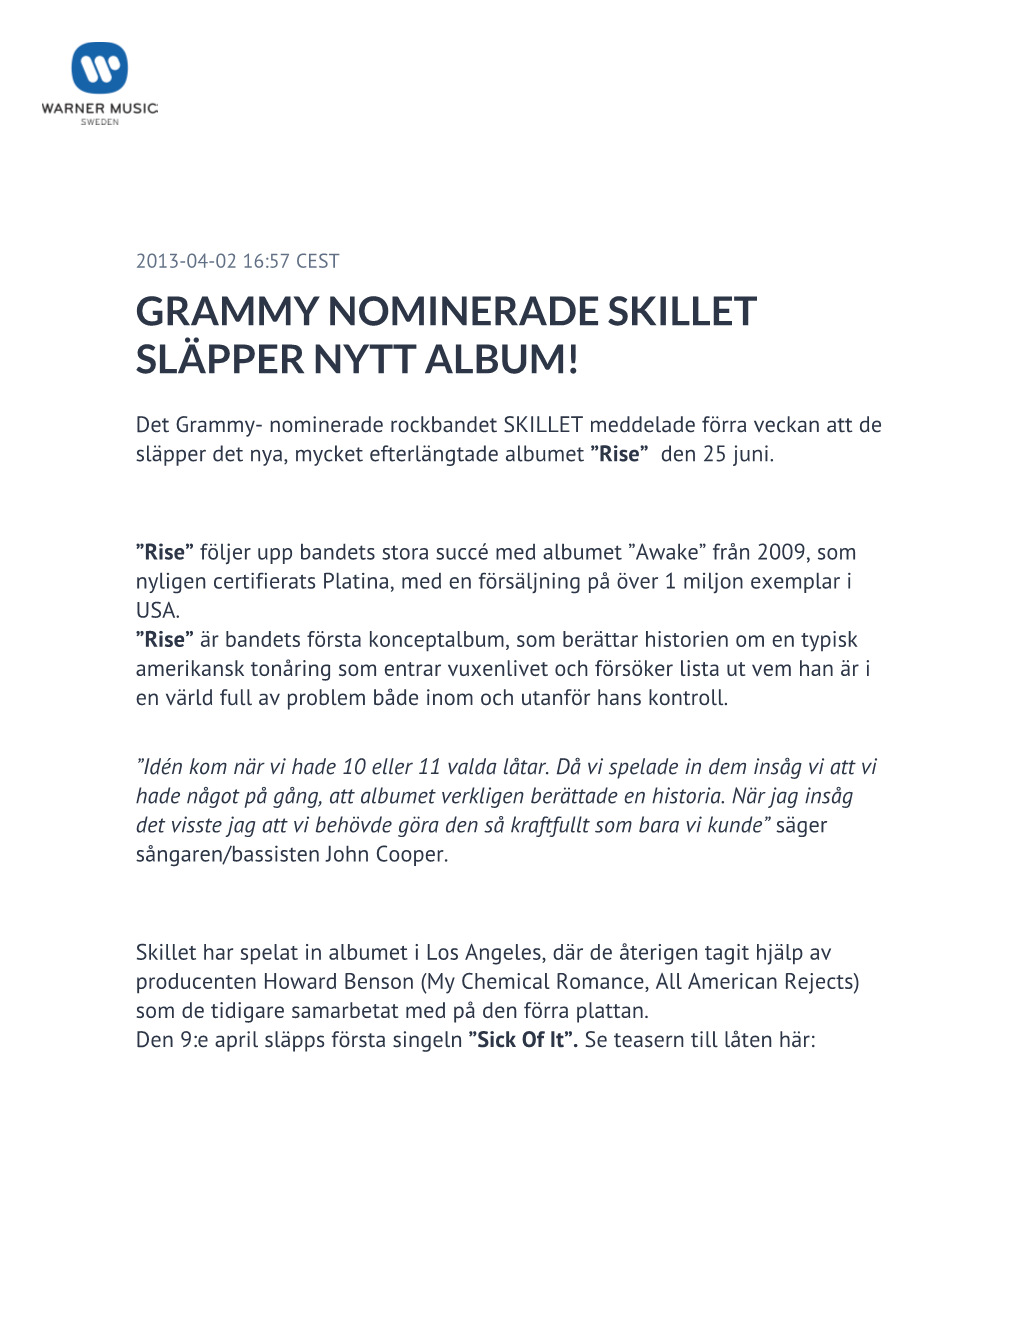 Grammy Nominerade Skillet Släpper Nytt Album!